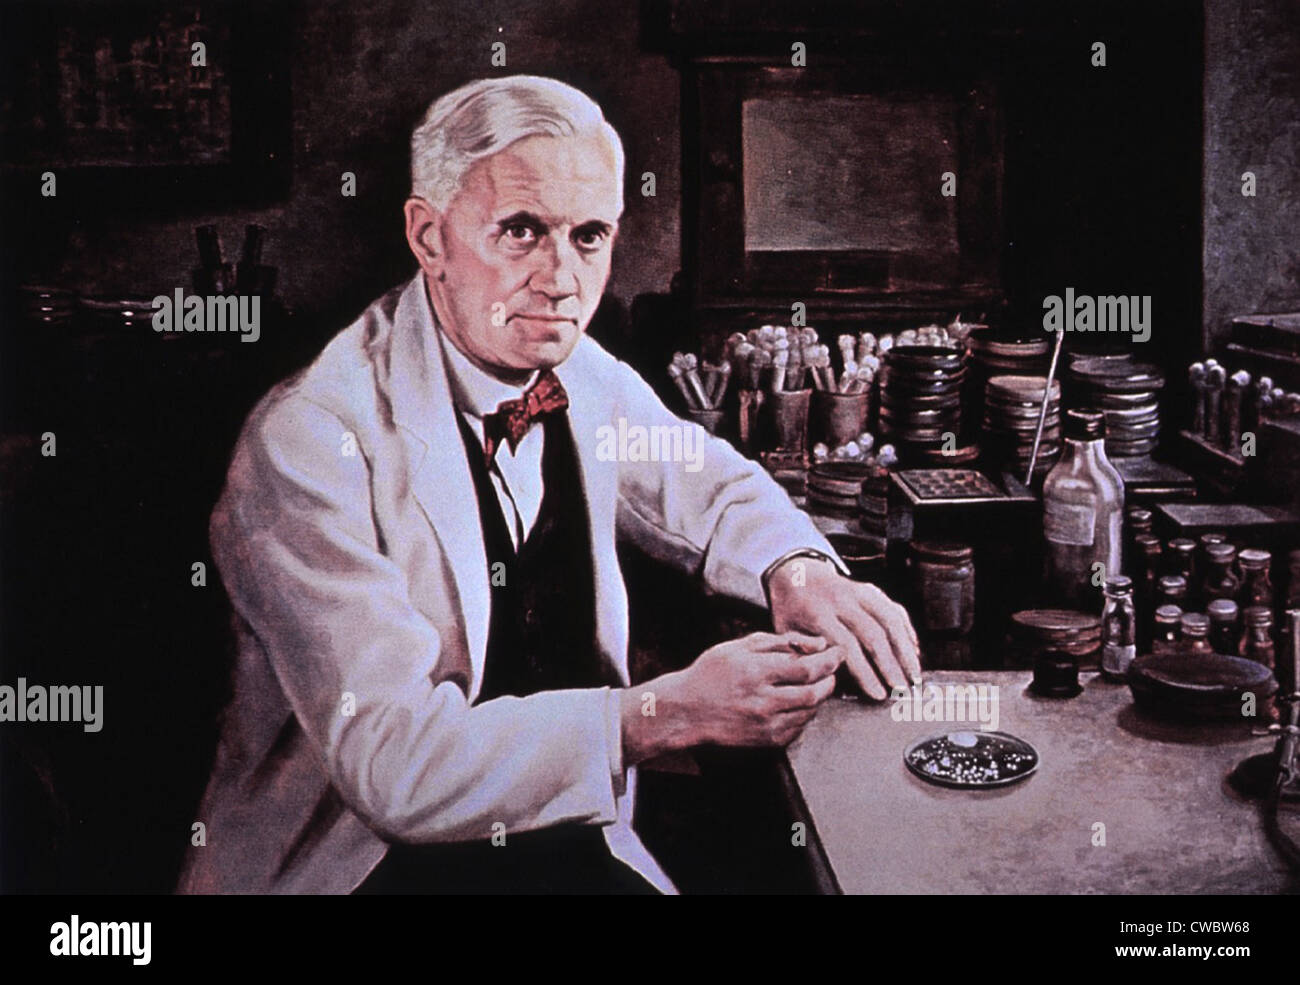 Alexander Fleming (1881-1955), am Labortisch. Gemälde von Dean Fausett. Stockfoto